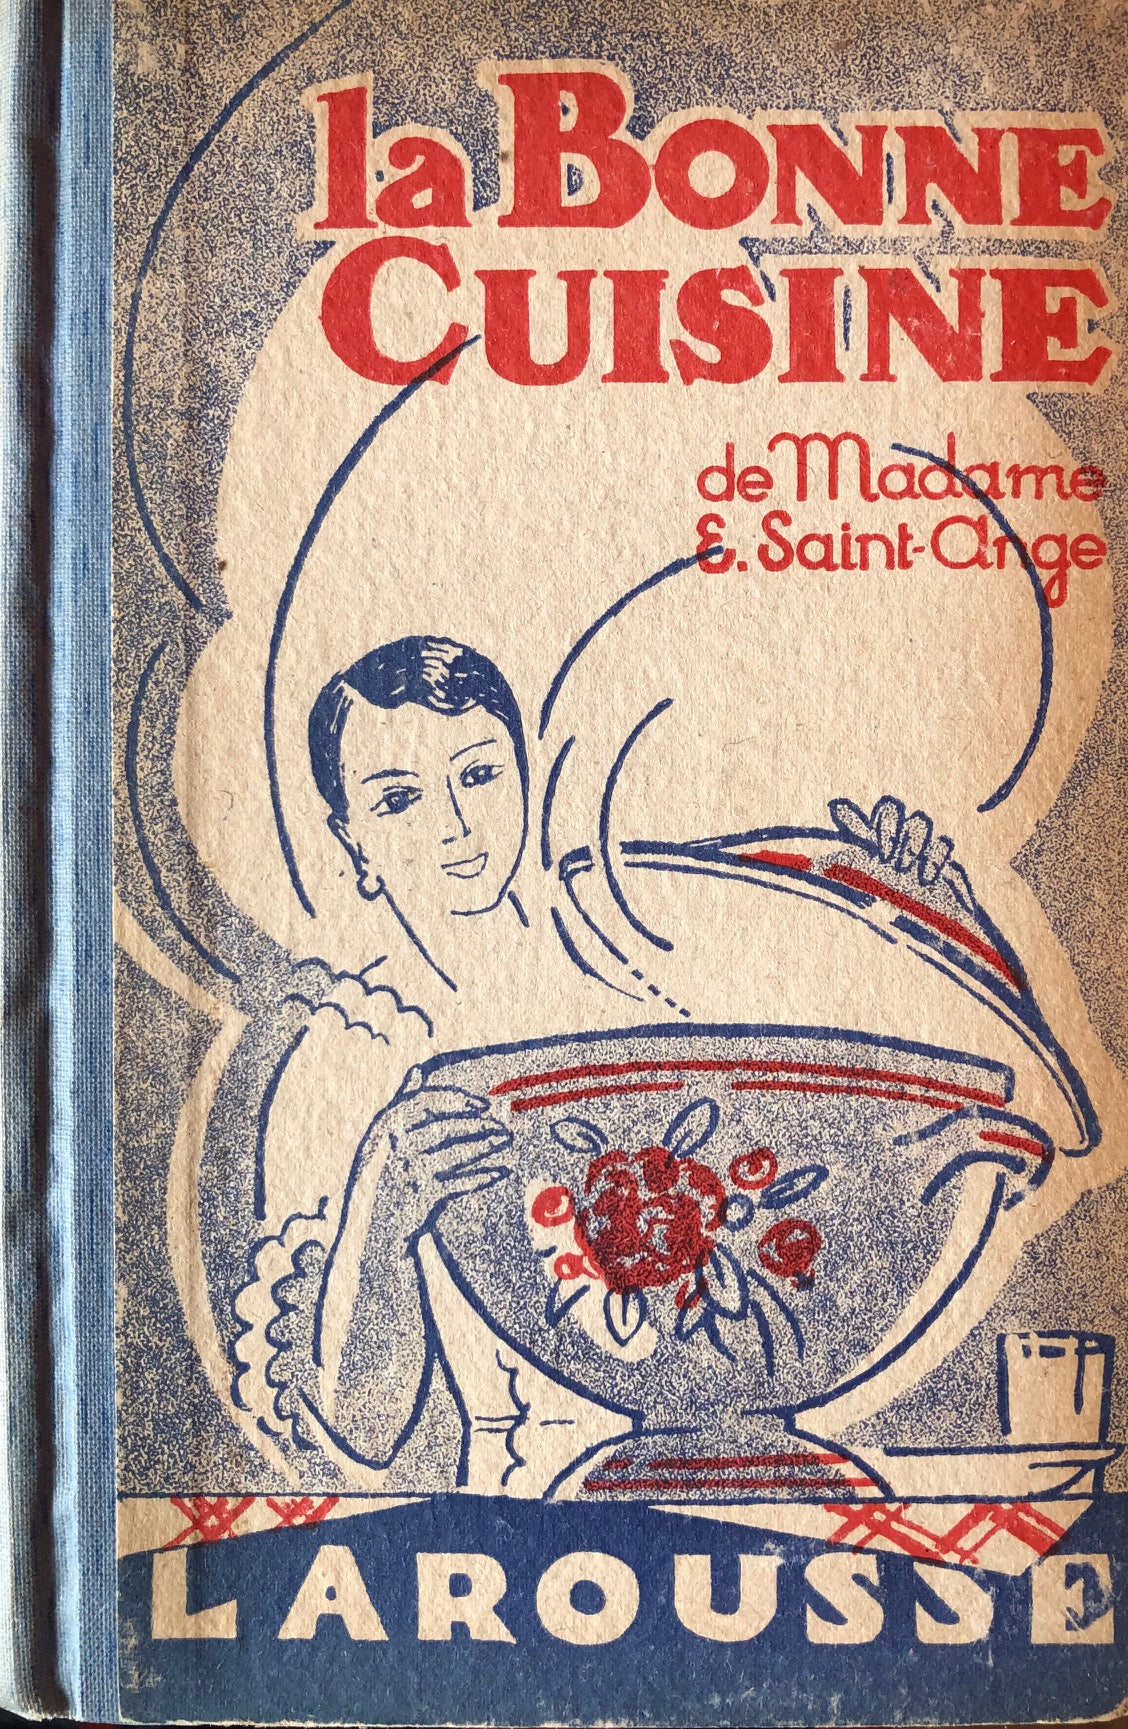 (French) Madame E. Saint-Ange. La Bonne Cuisine de Mme. E. Saint-Ange: Huit Recettes et Cinq Cents Menus.